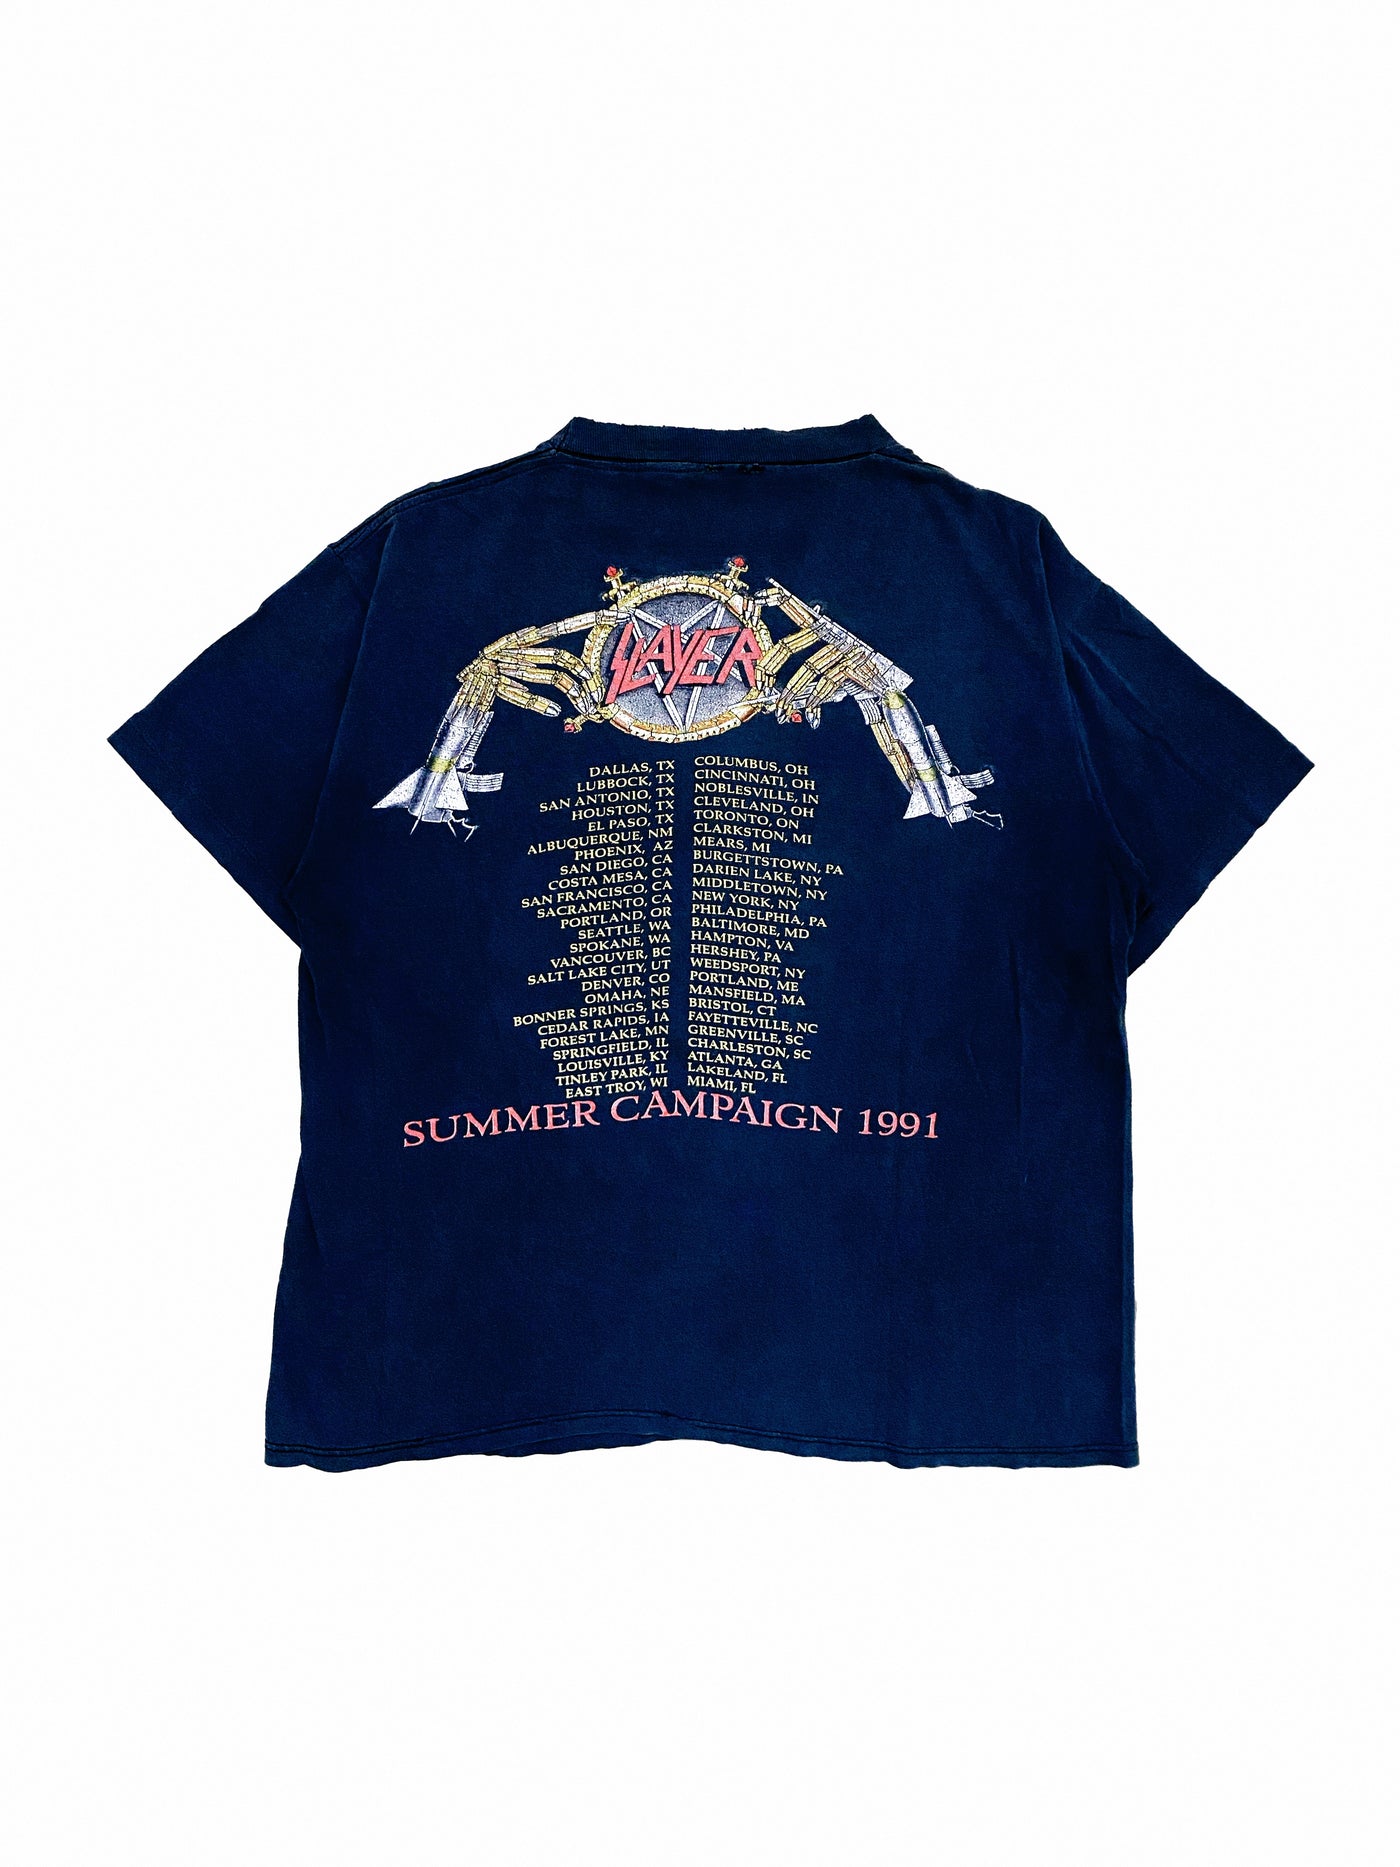 Vintage 1991 Slayer Summer Campaign T-Shirt